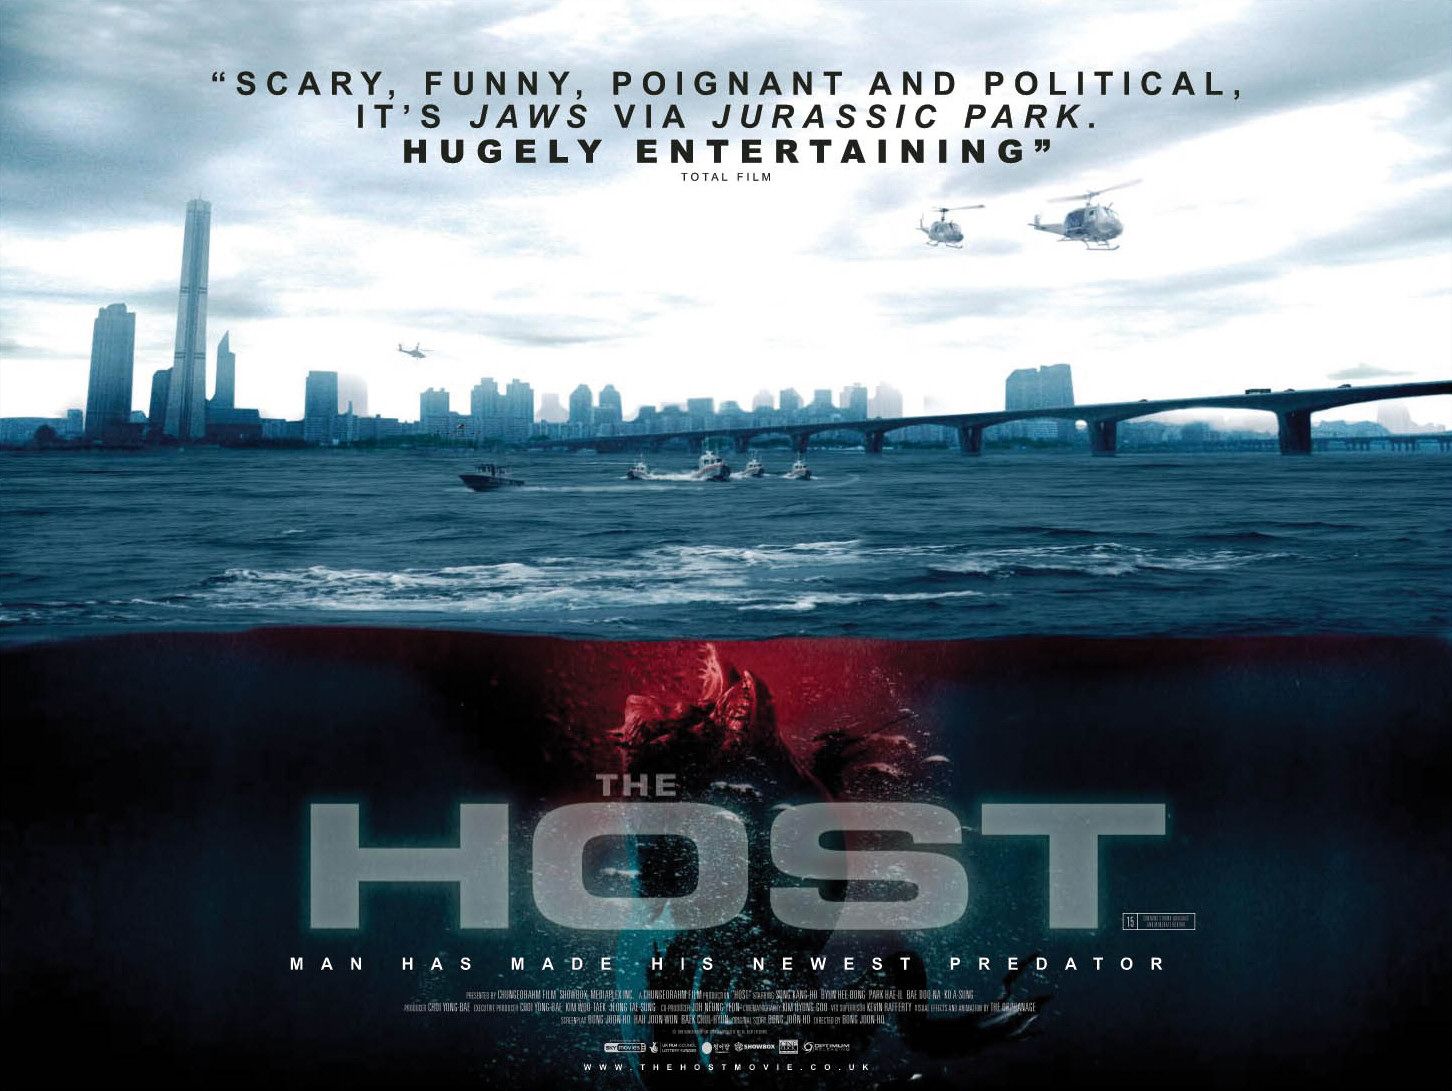 The Host (2006) – Trailer 